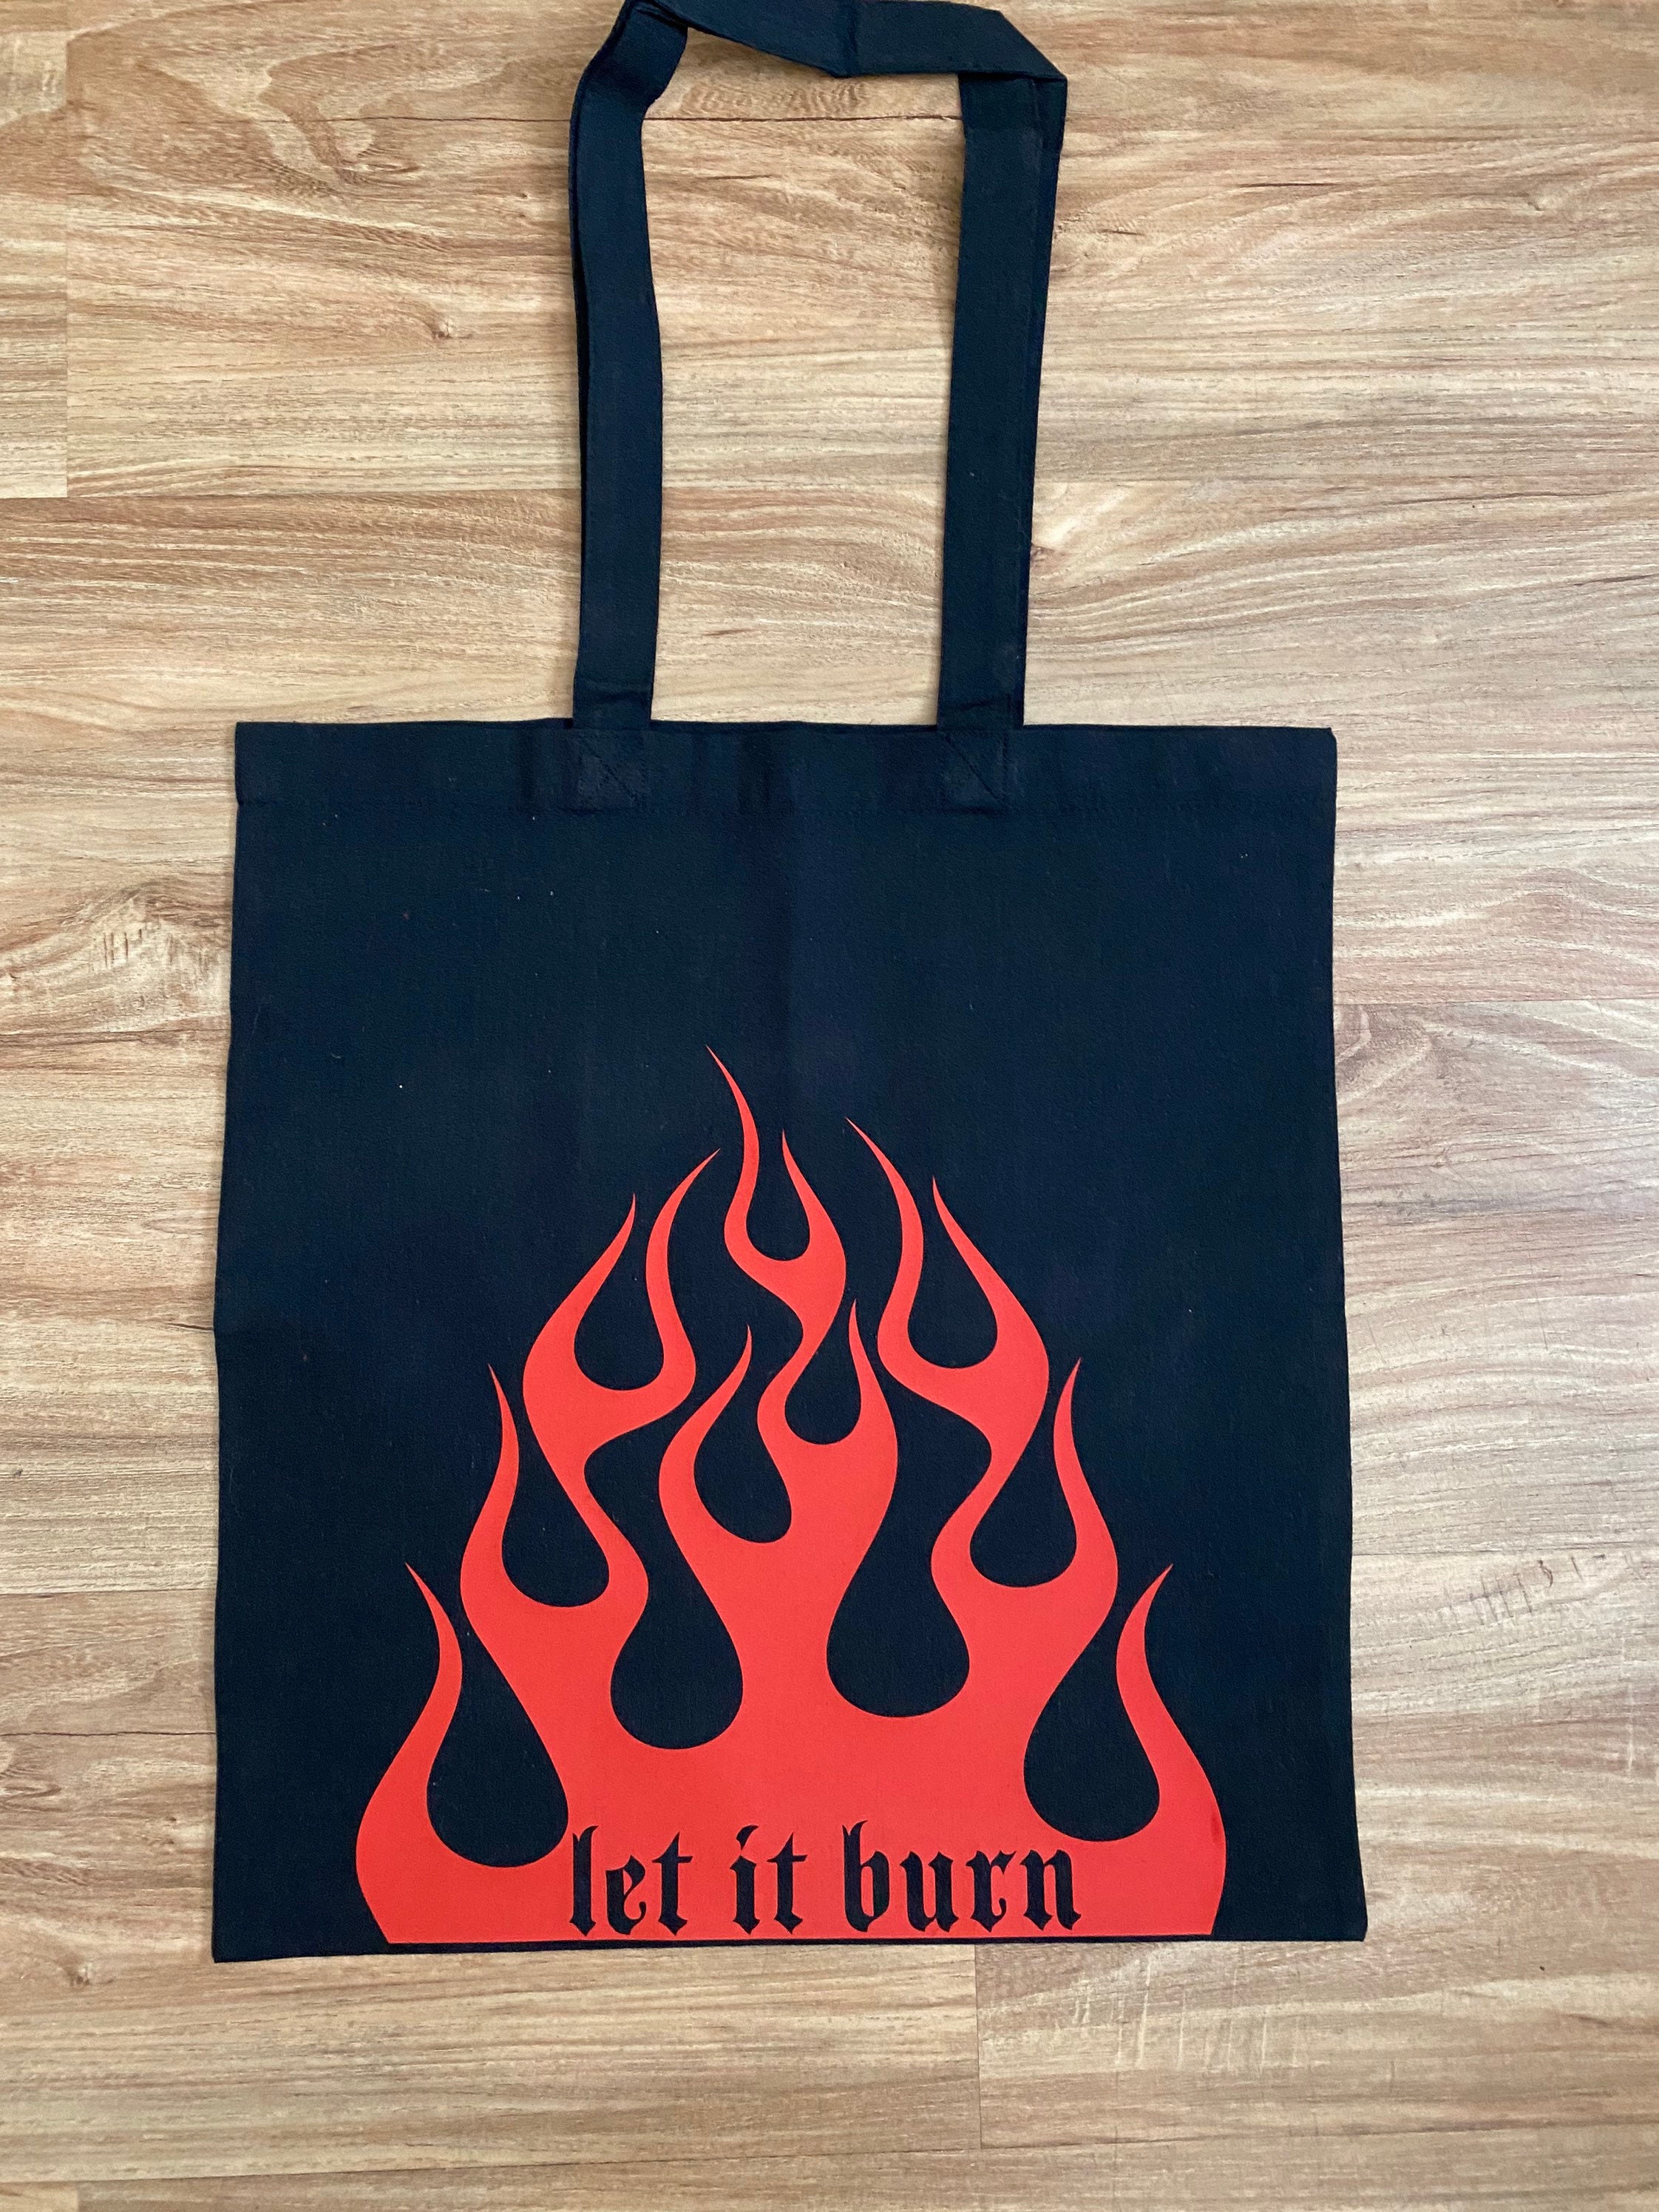 Mængde penge Violin Boost Let It Burn 100% Cotton Tote Reusable Bag Fire Red let - Etsy